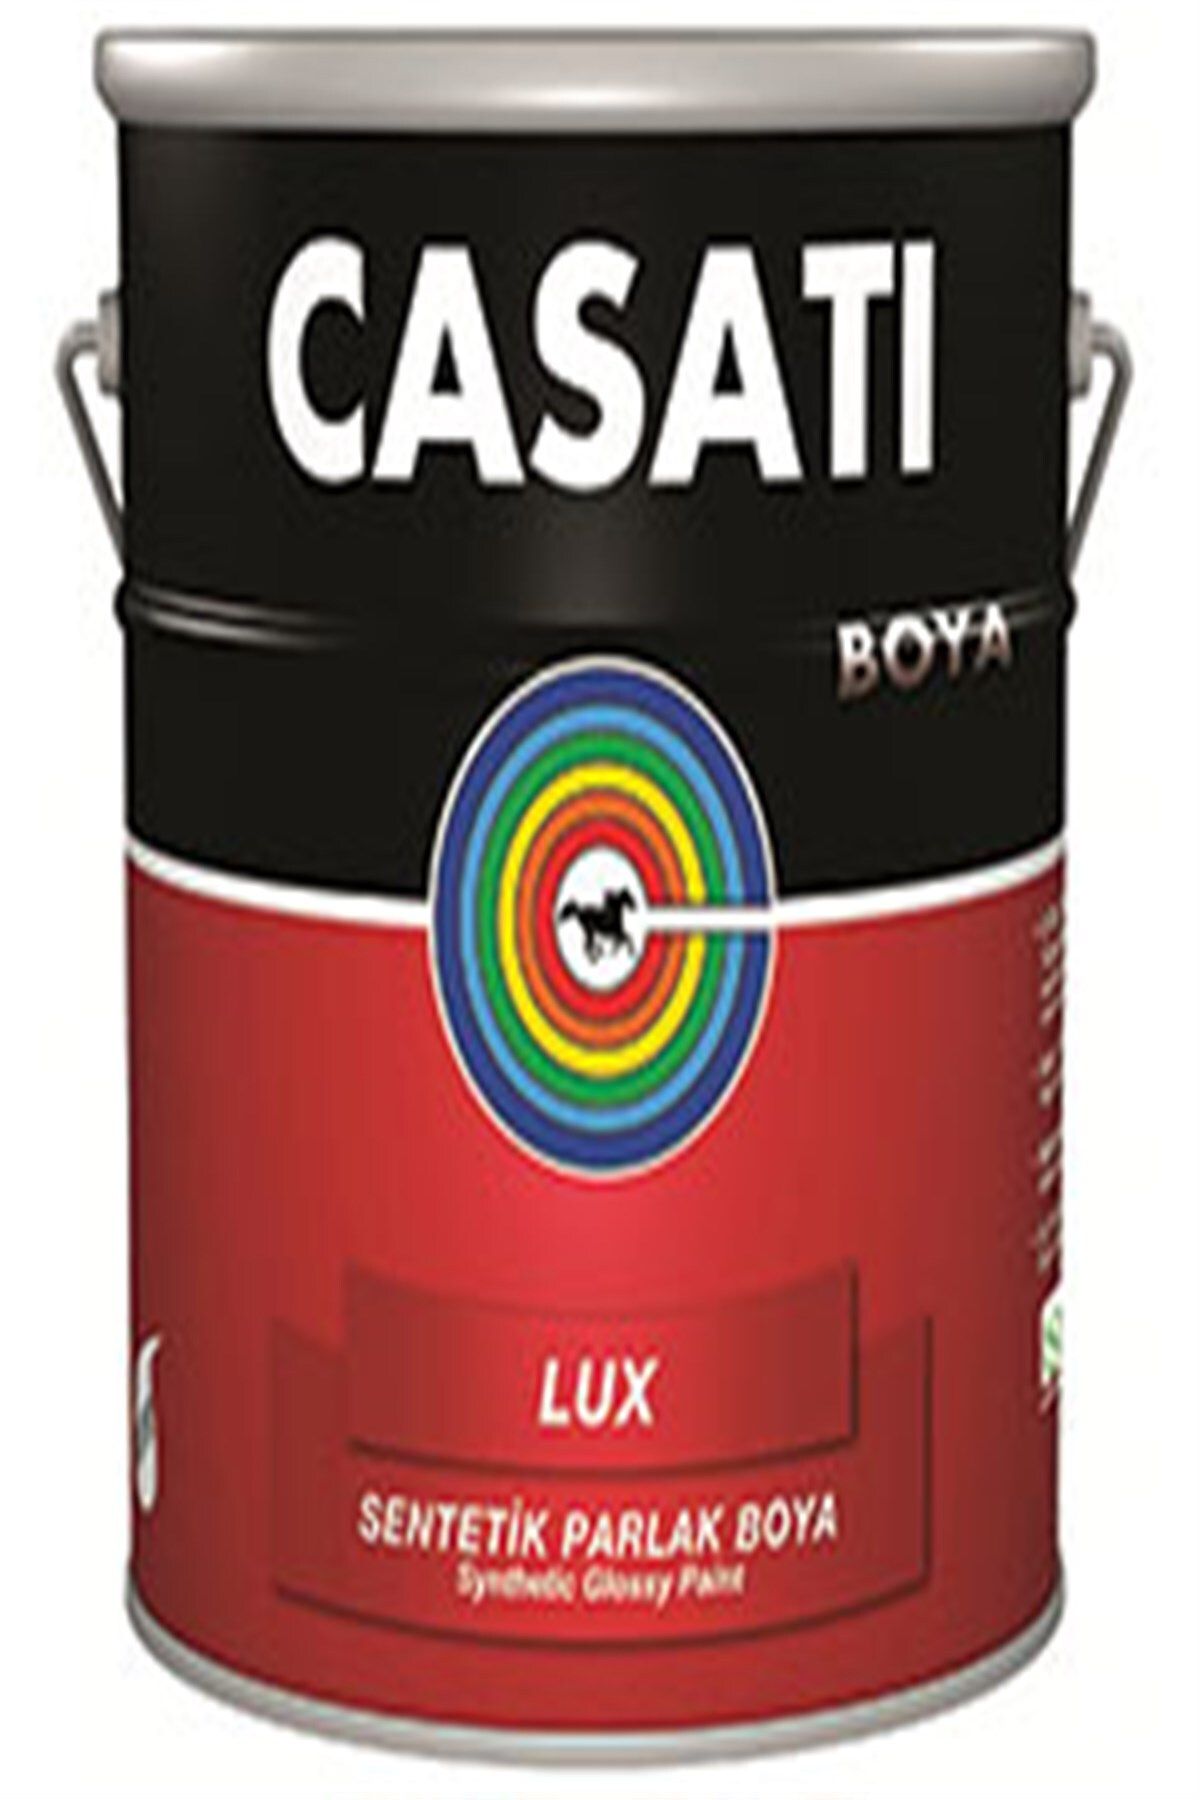 Casati Lüx Sentetik Parlak Boya 0,75 Litre Tüm Renkler Mevcuttur